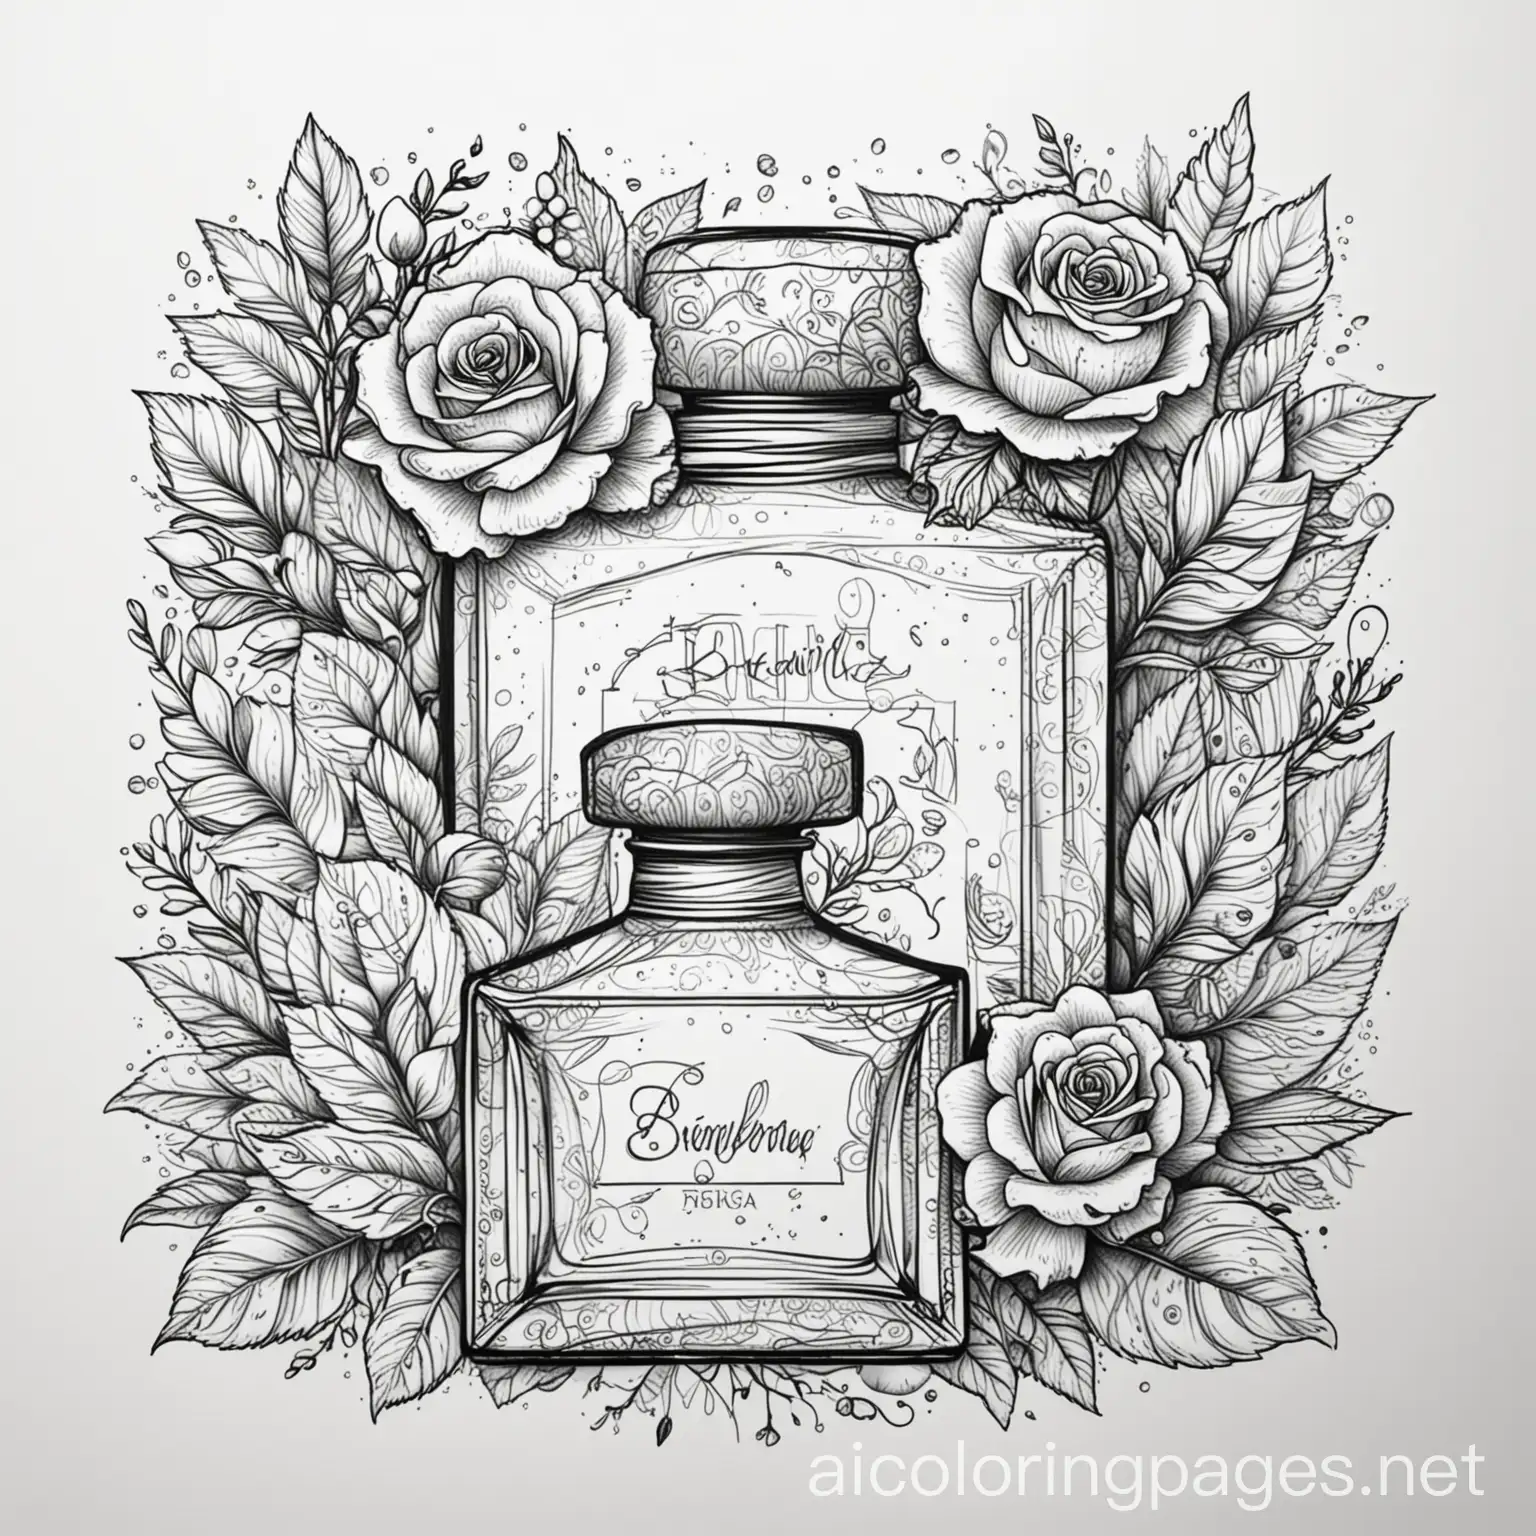 Doodle de una decoración de arbusto con rosas y frascos de perfume elegantes, Coloring Page, black and white, line art, white background, Simplicity, Ample White Space.